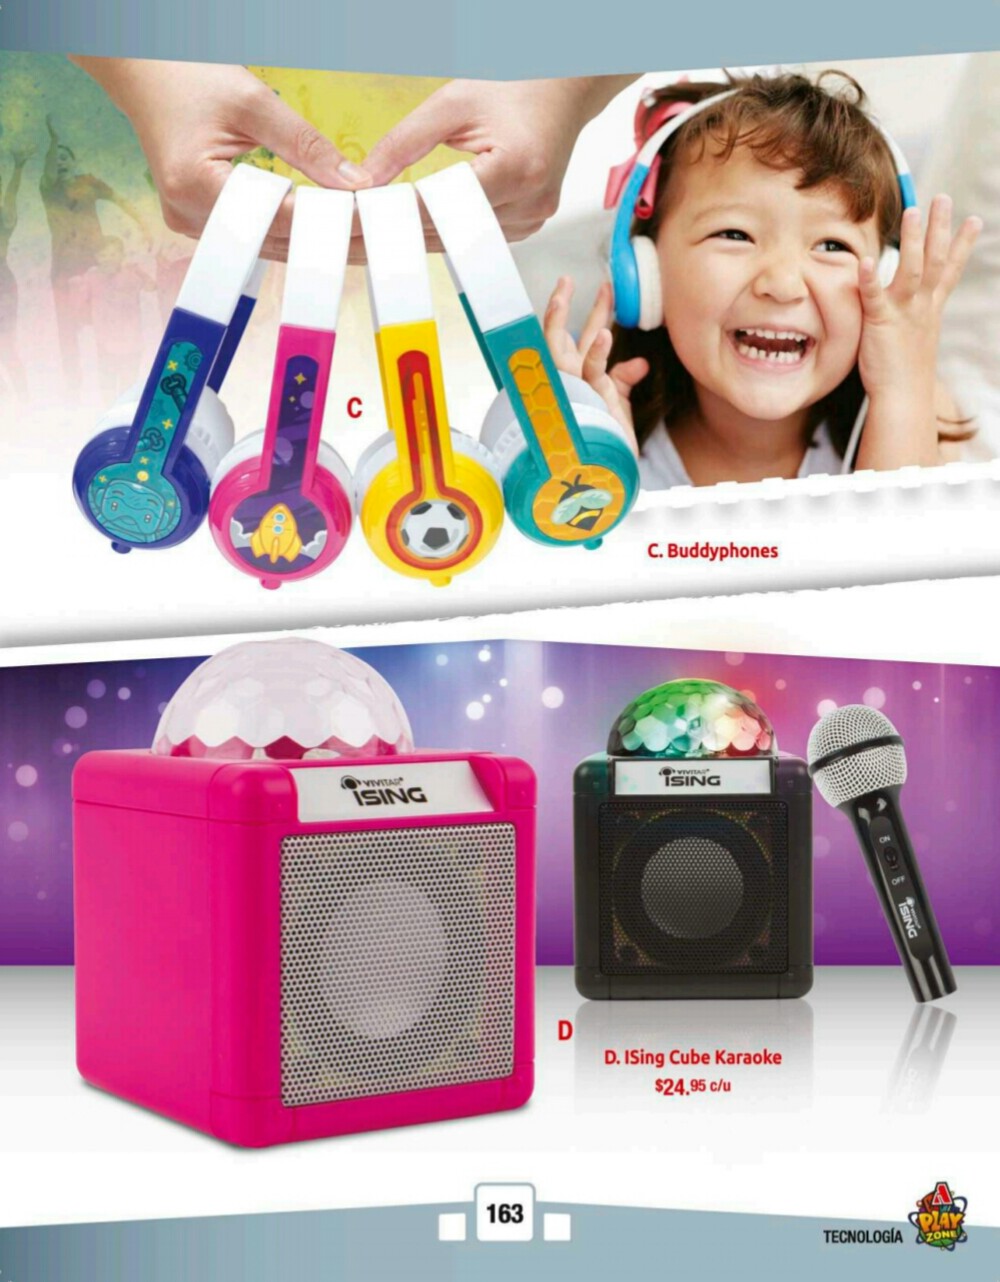 Catalogos juguetes farmacia Arrocha 2018 p163